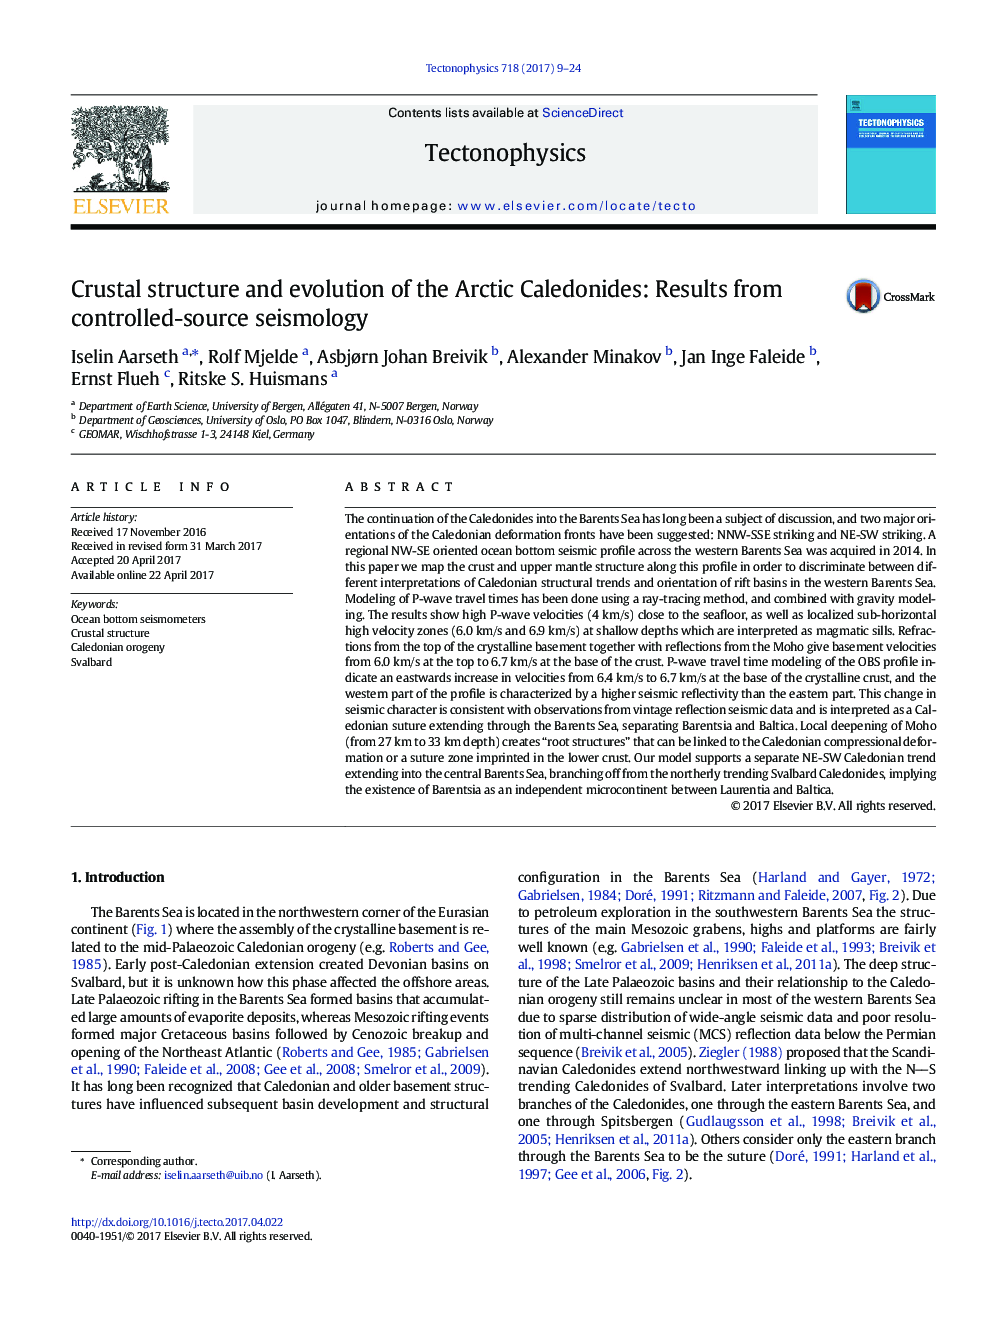 ساختار پوسته و تکامل کالدونیدس قطب شمال: نتایج حاصل از زلزله شناسی منبع کنترل شده 